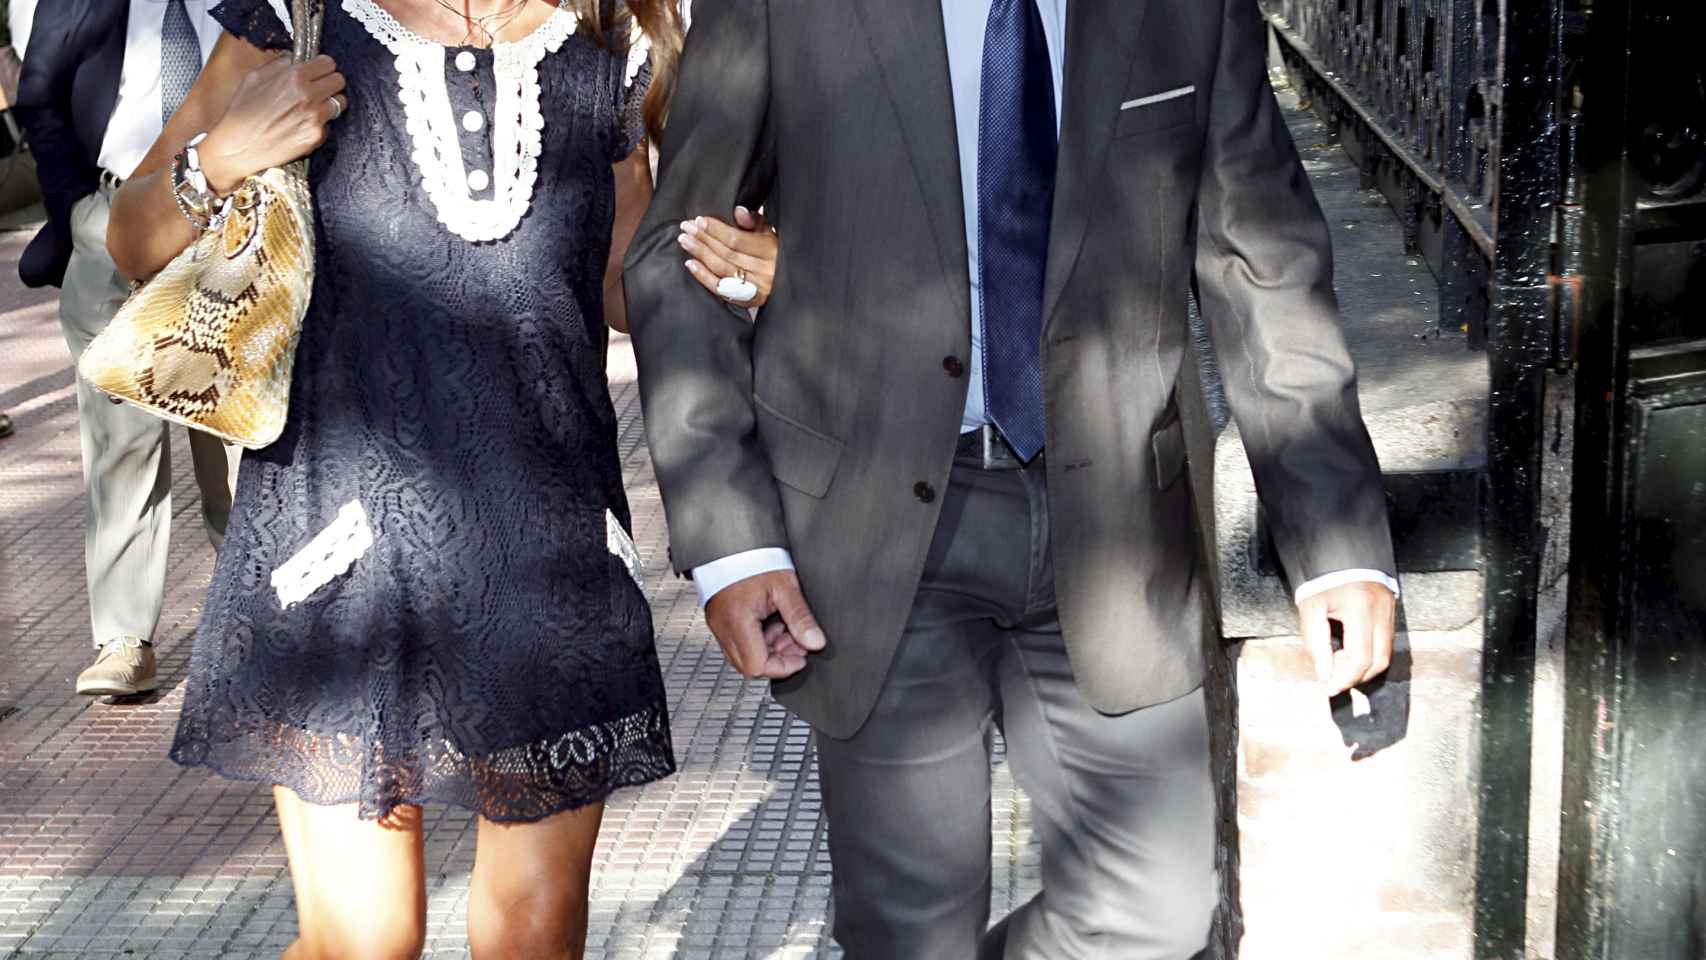 Marisa Martín-Blazquez y Antonio Montero continúan viviendo juntos tras su divorcio en 2015.